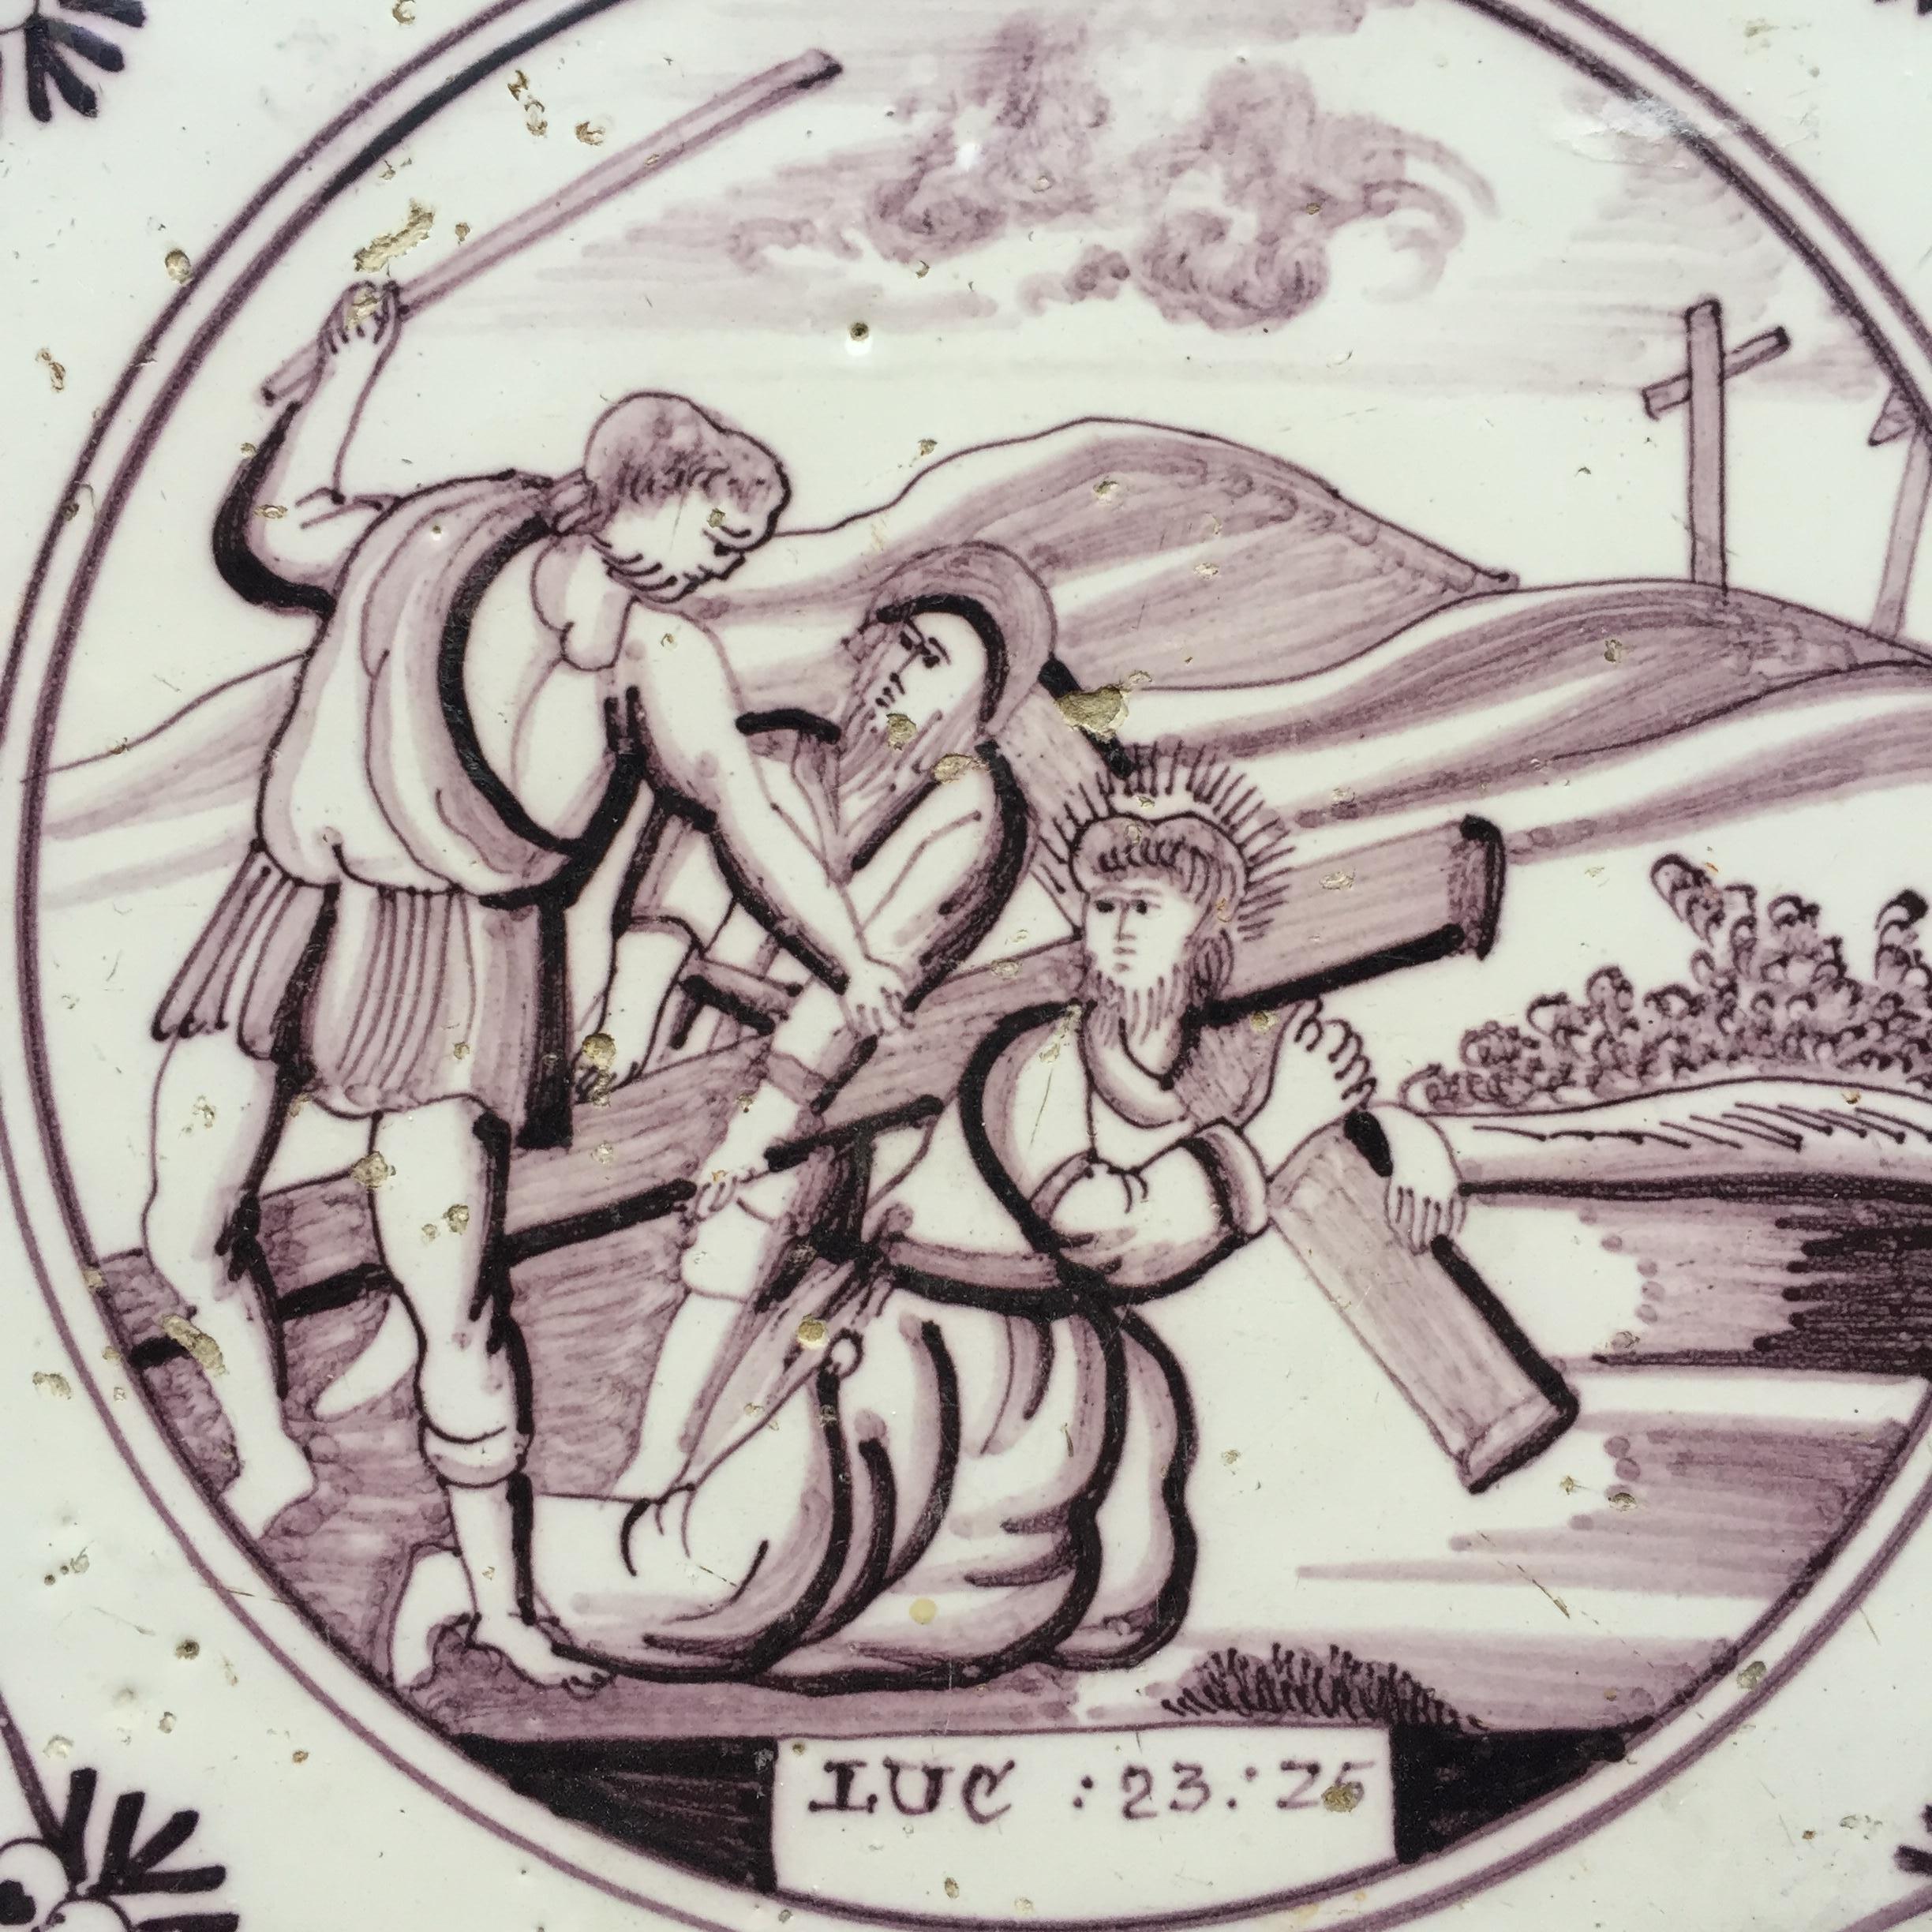 Die Niederlande
Utrecht
CIRCA 1775 - 1800

Eine feine holländische Manganfliese mit einer biblischen Darstellung der Kreuztragung aus dem Neuen Testament, Lukas 23, Vers 25: 